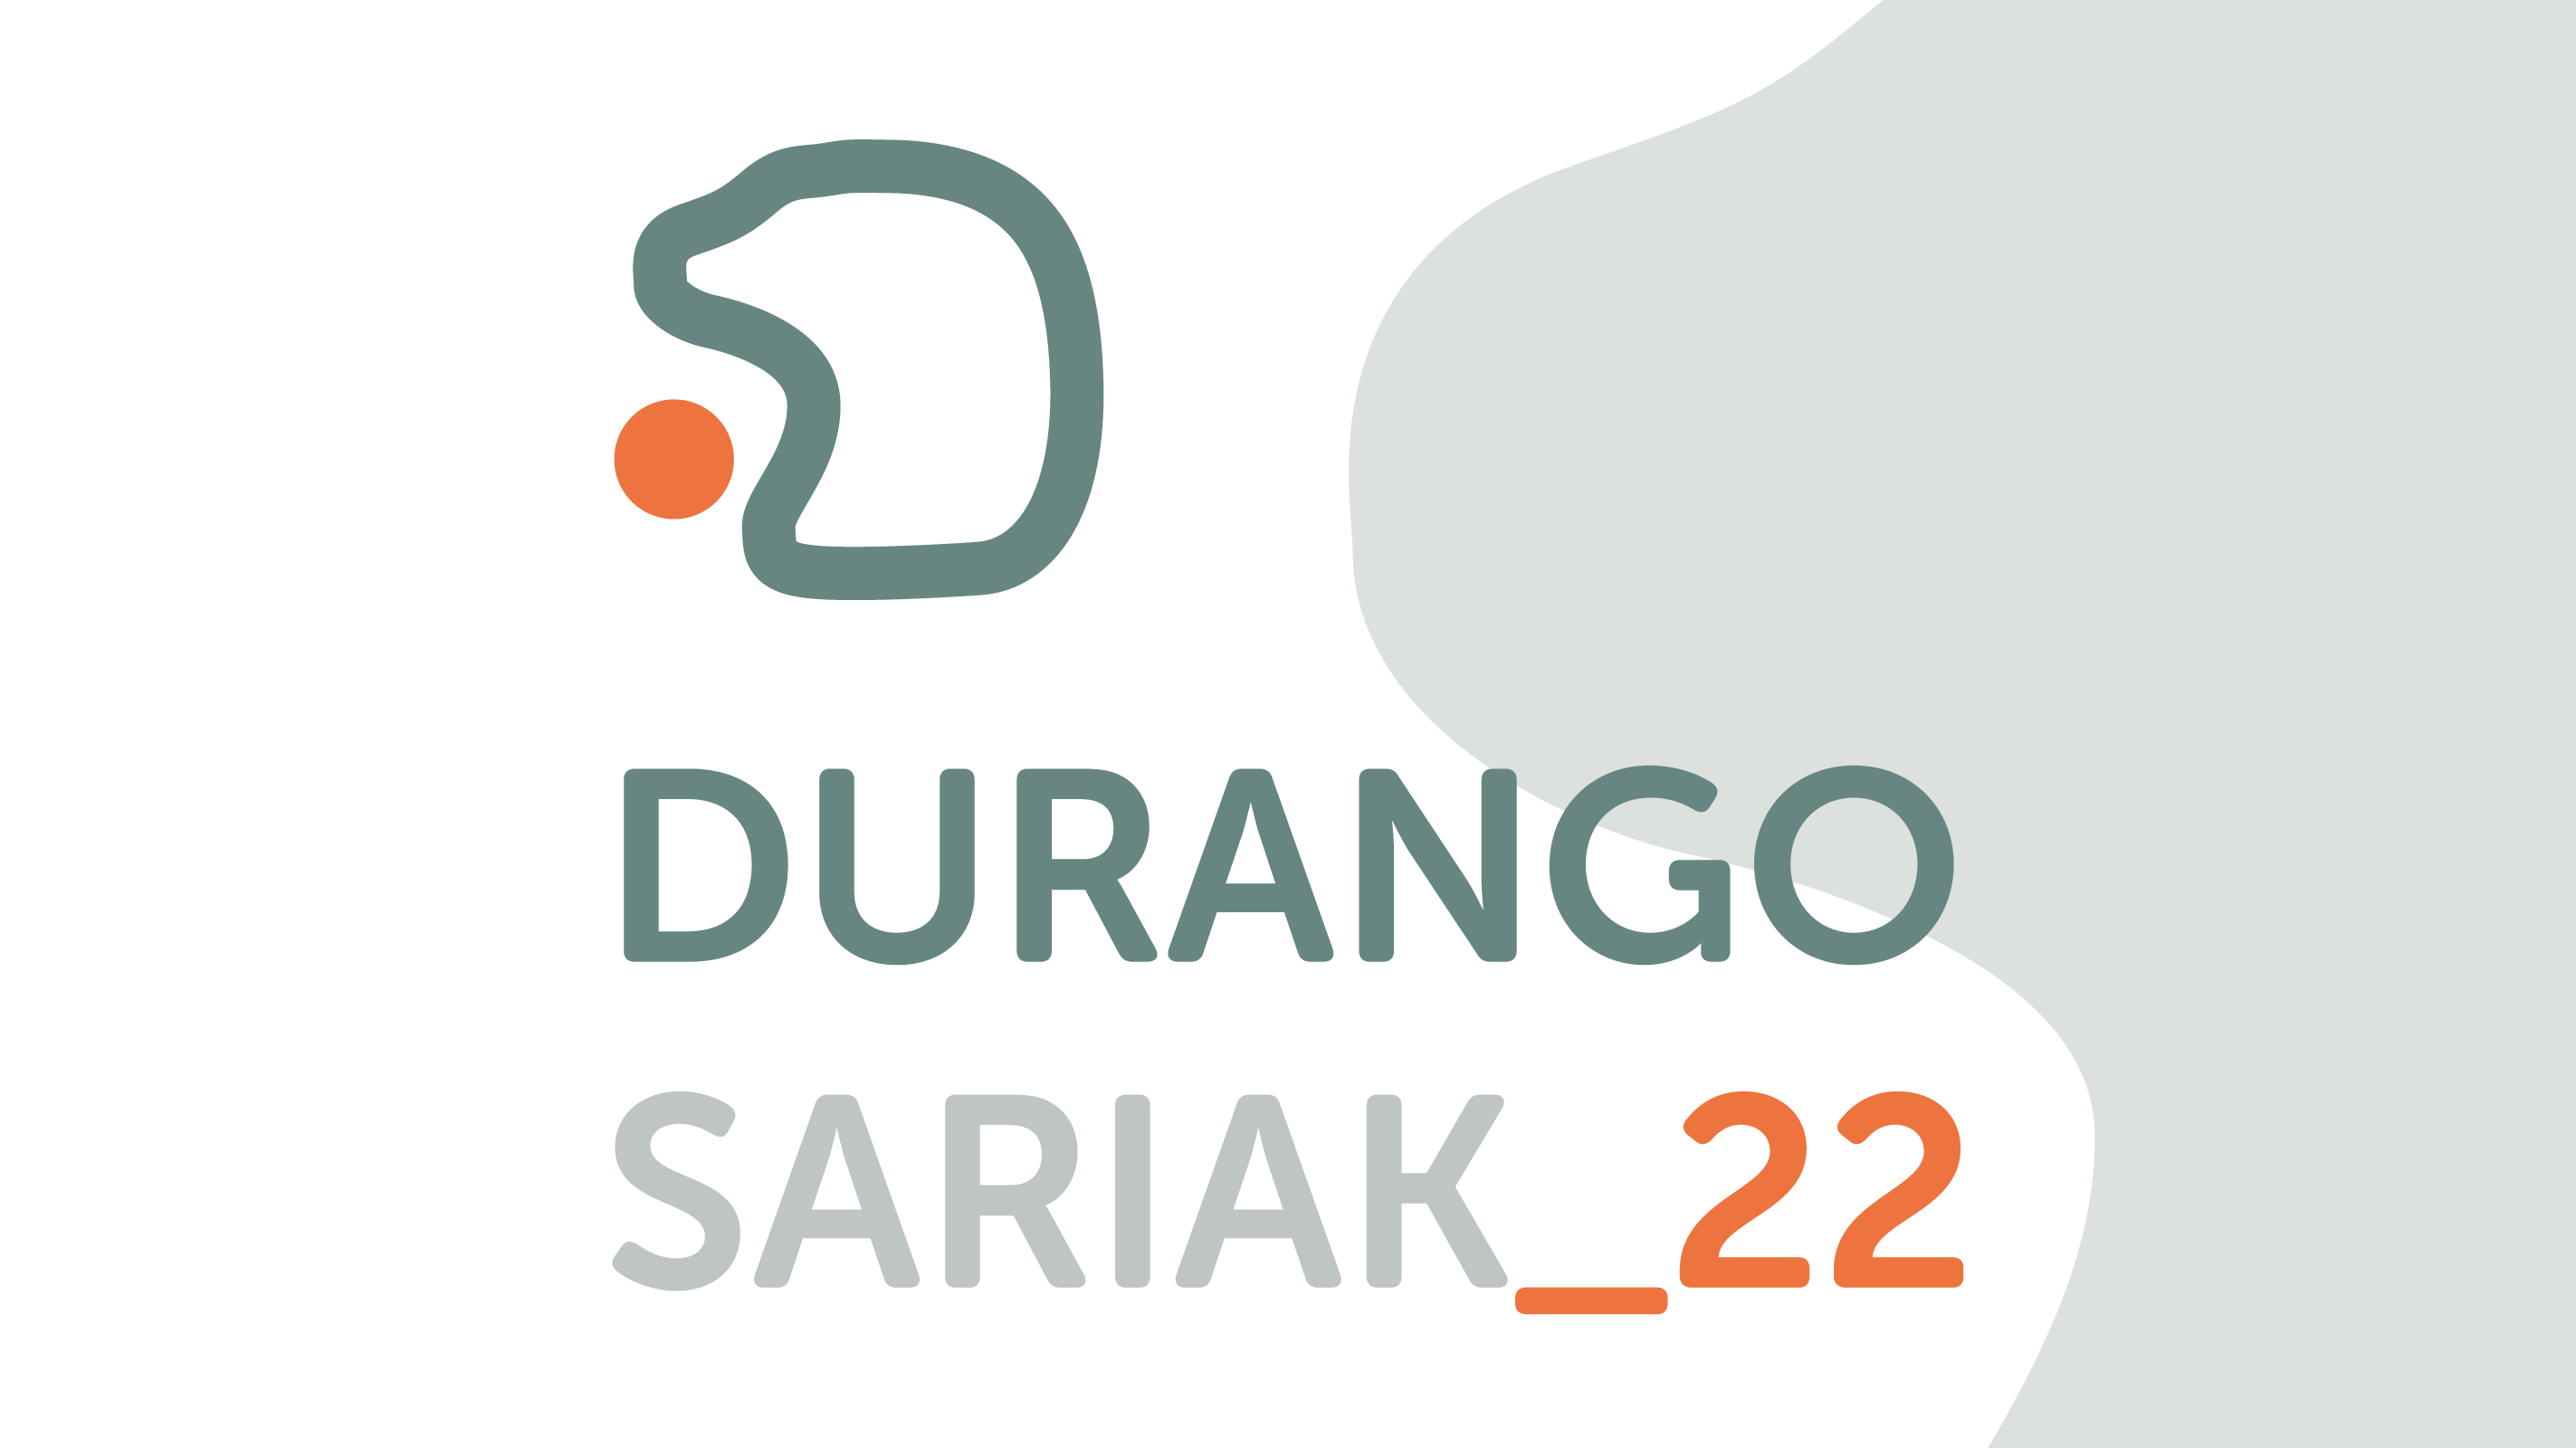 Imagen Durango Sariak 2022 - Bozketa